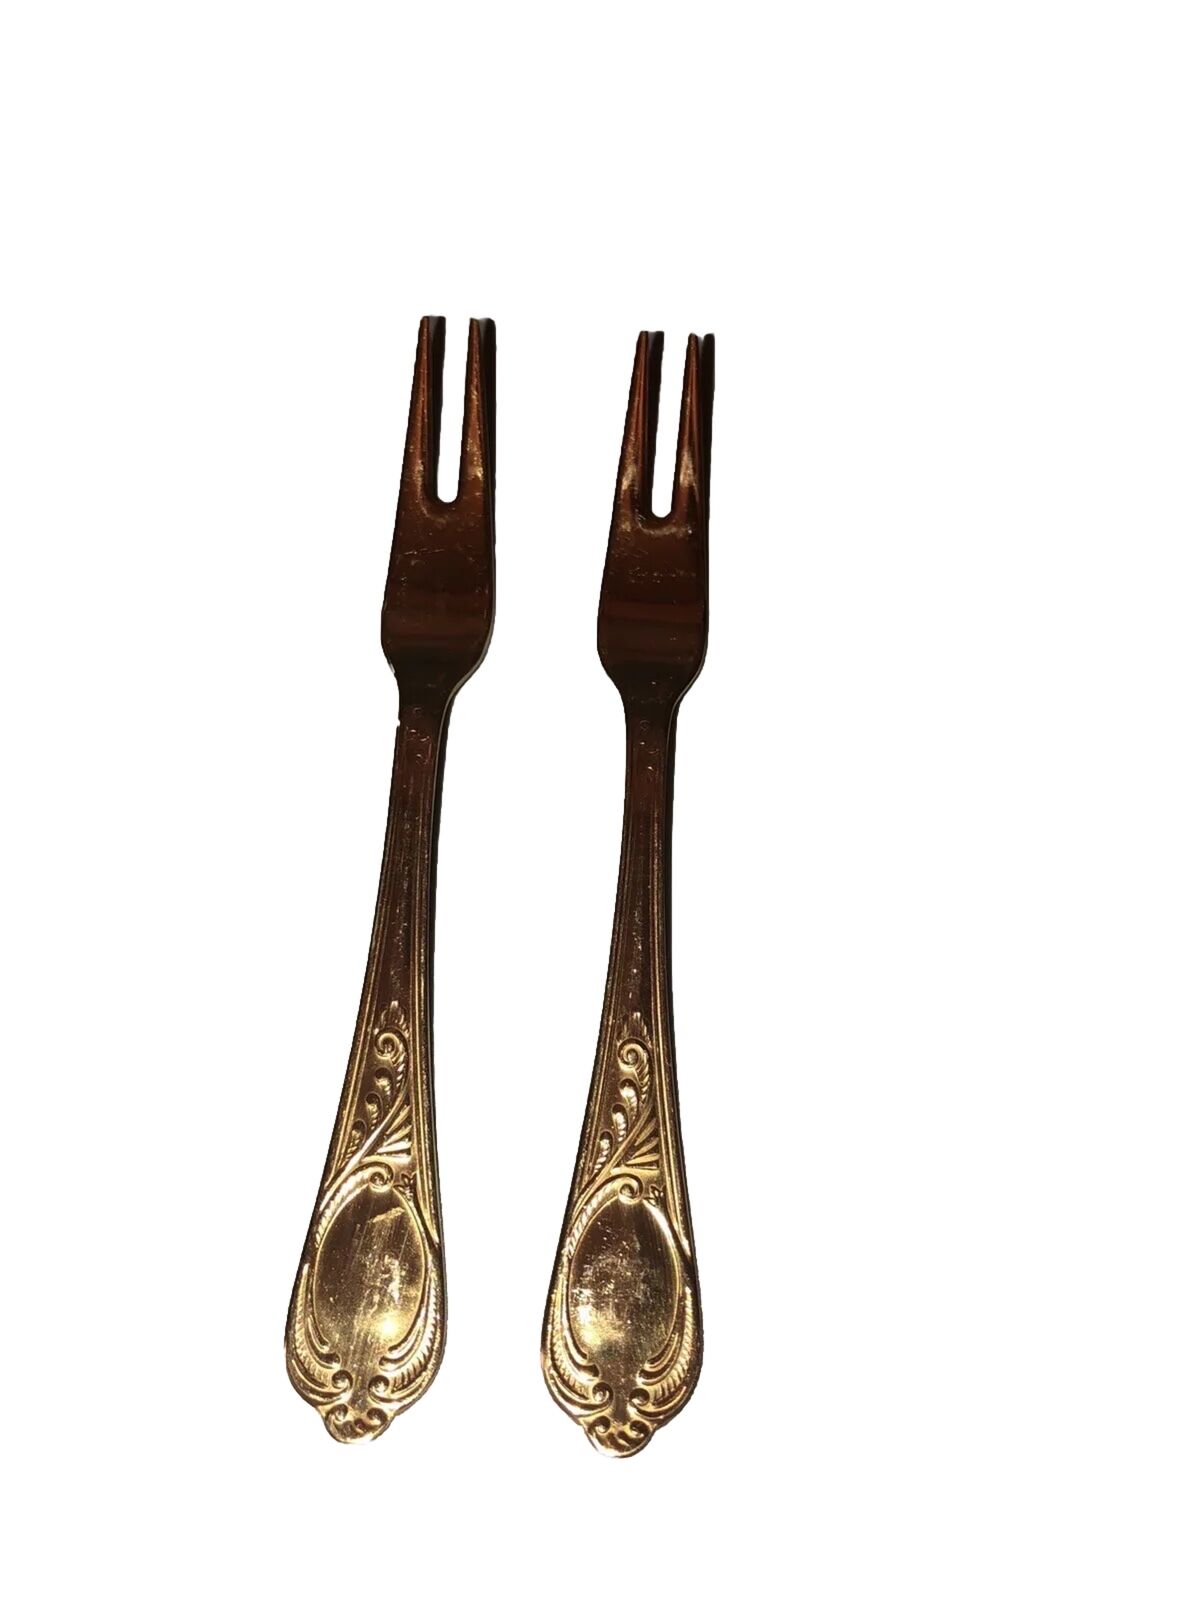 2 Olive Forks 24 Kt Gold Plated Germany flatware ￼ SBS